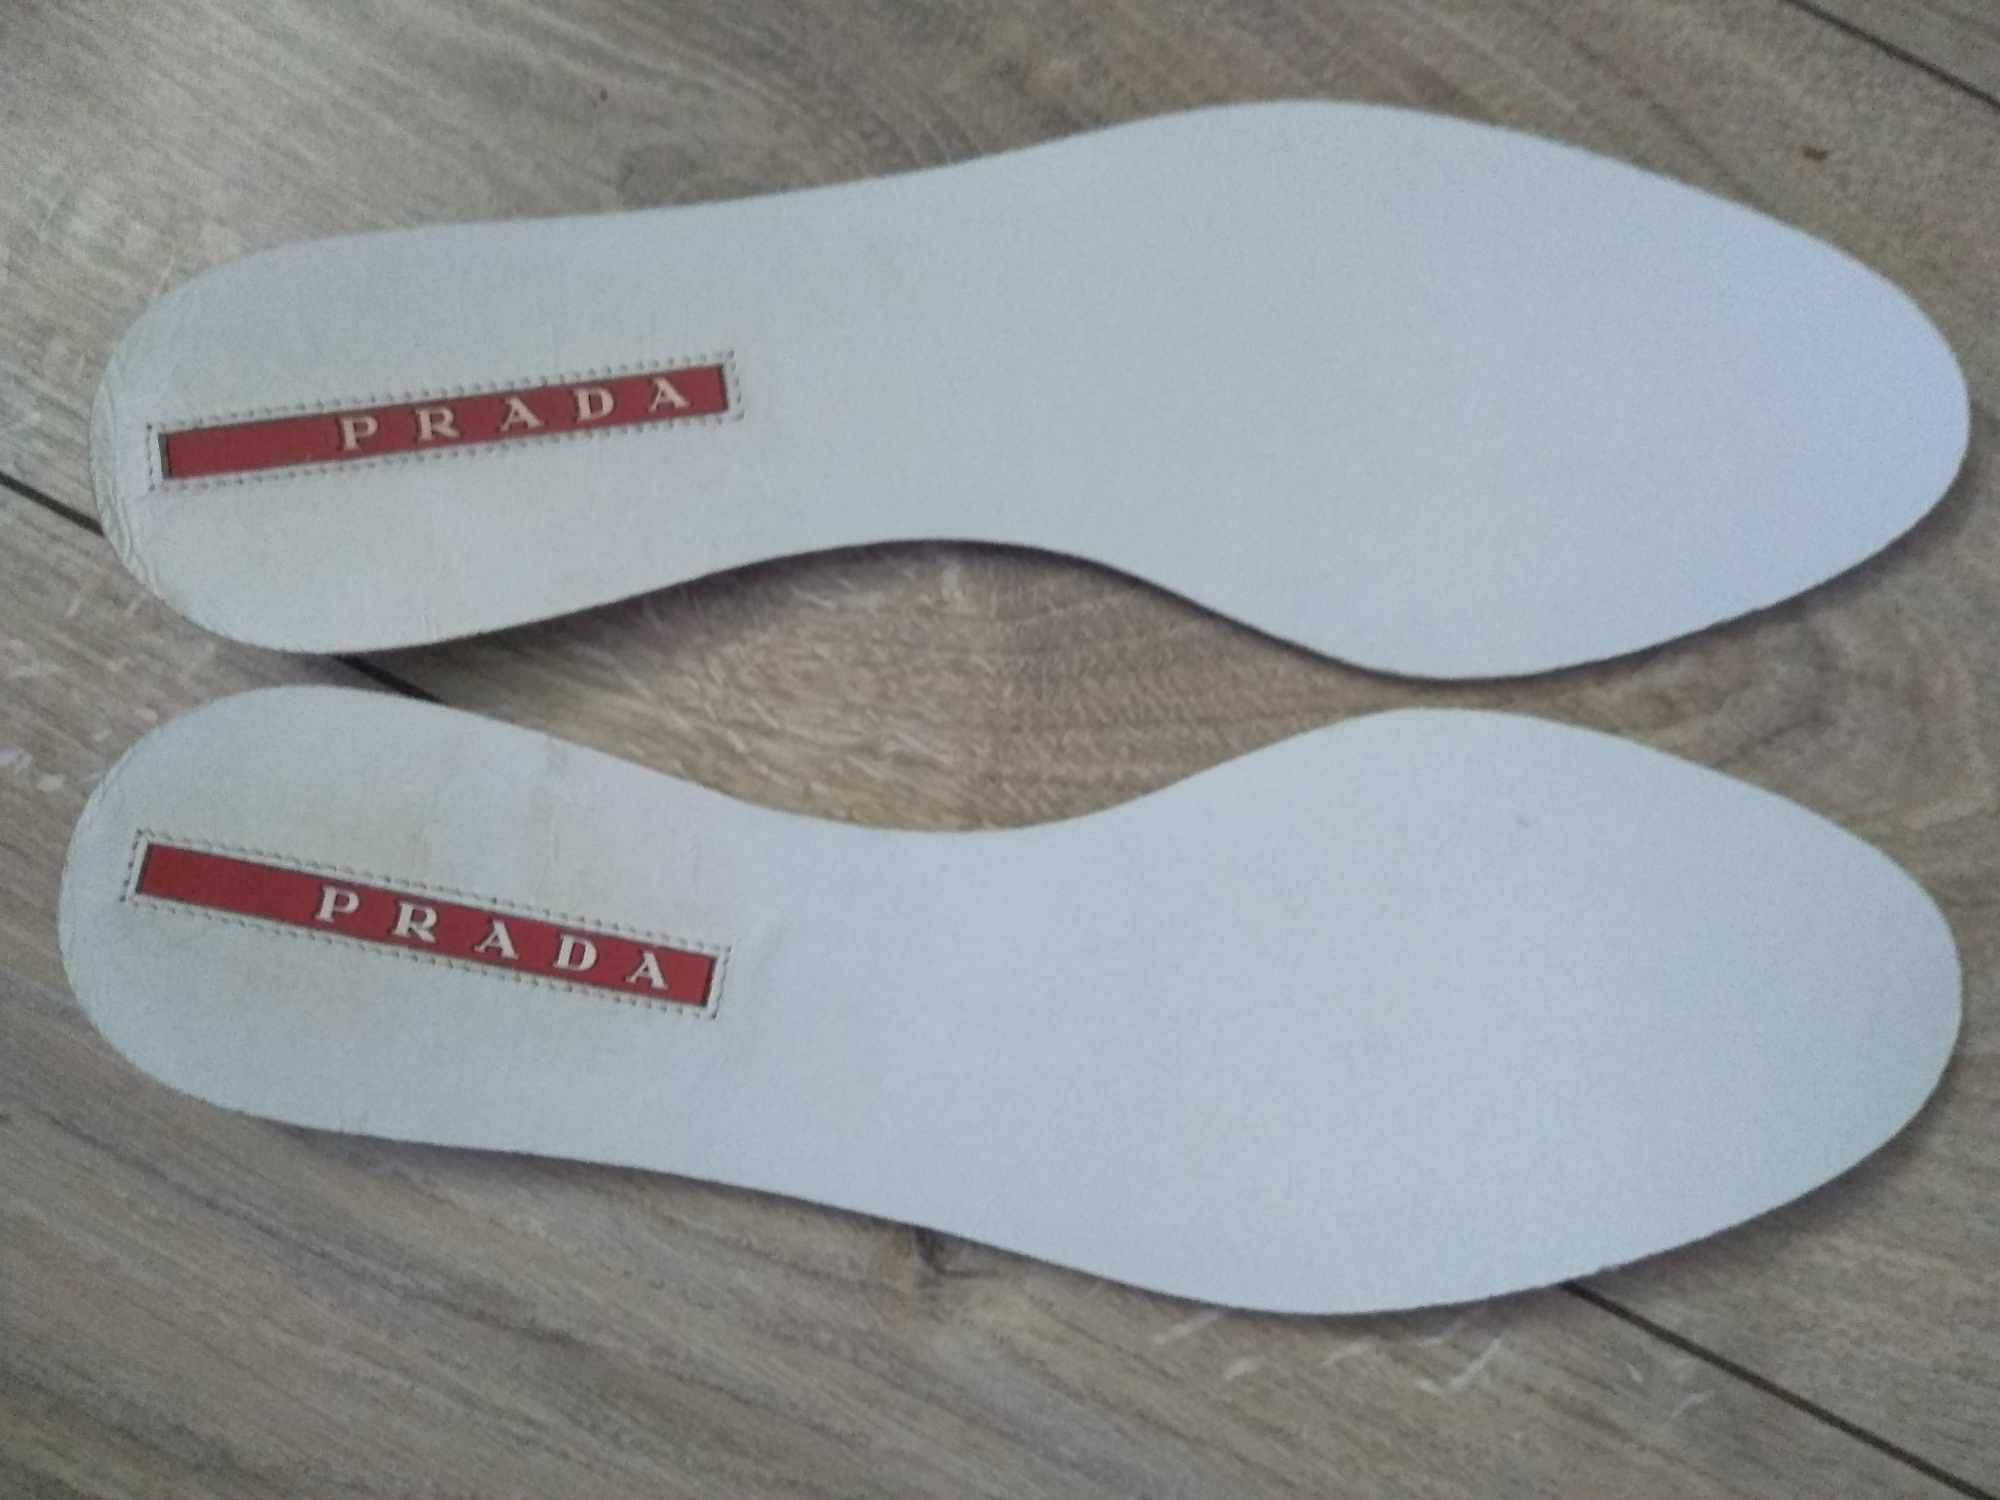 Prada wkładki do butów inserts for shoes 26,5 cm